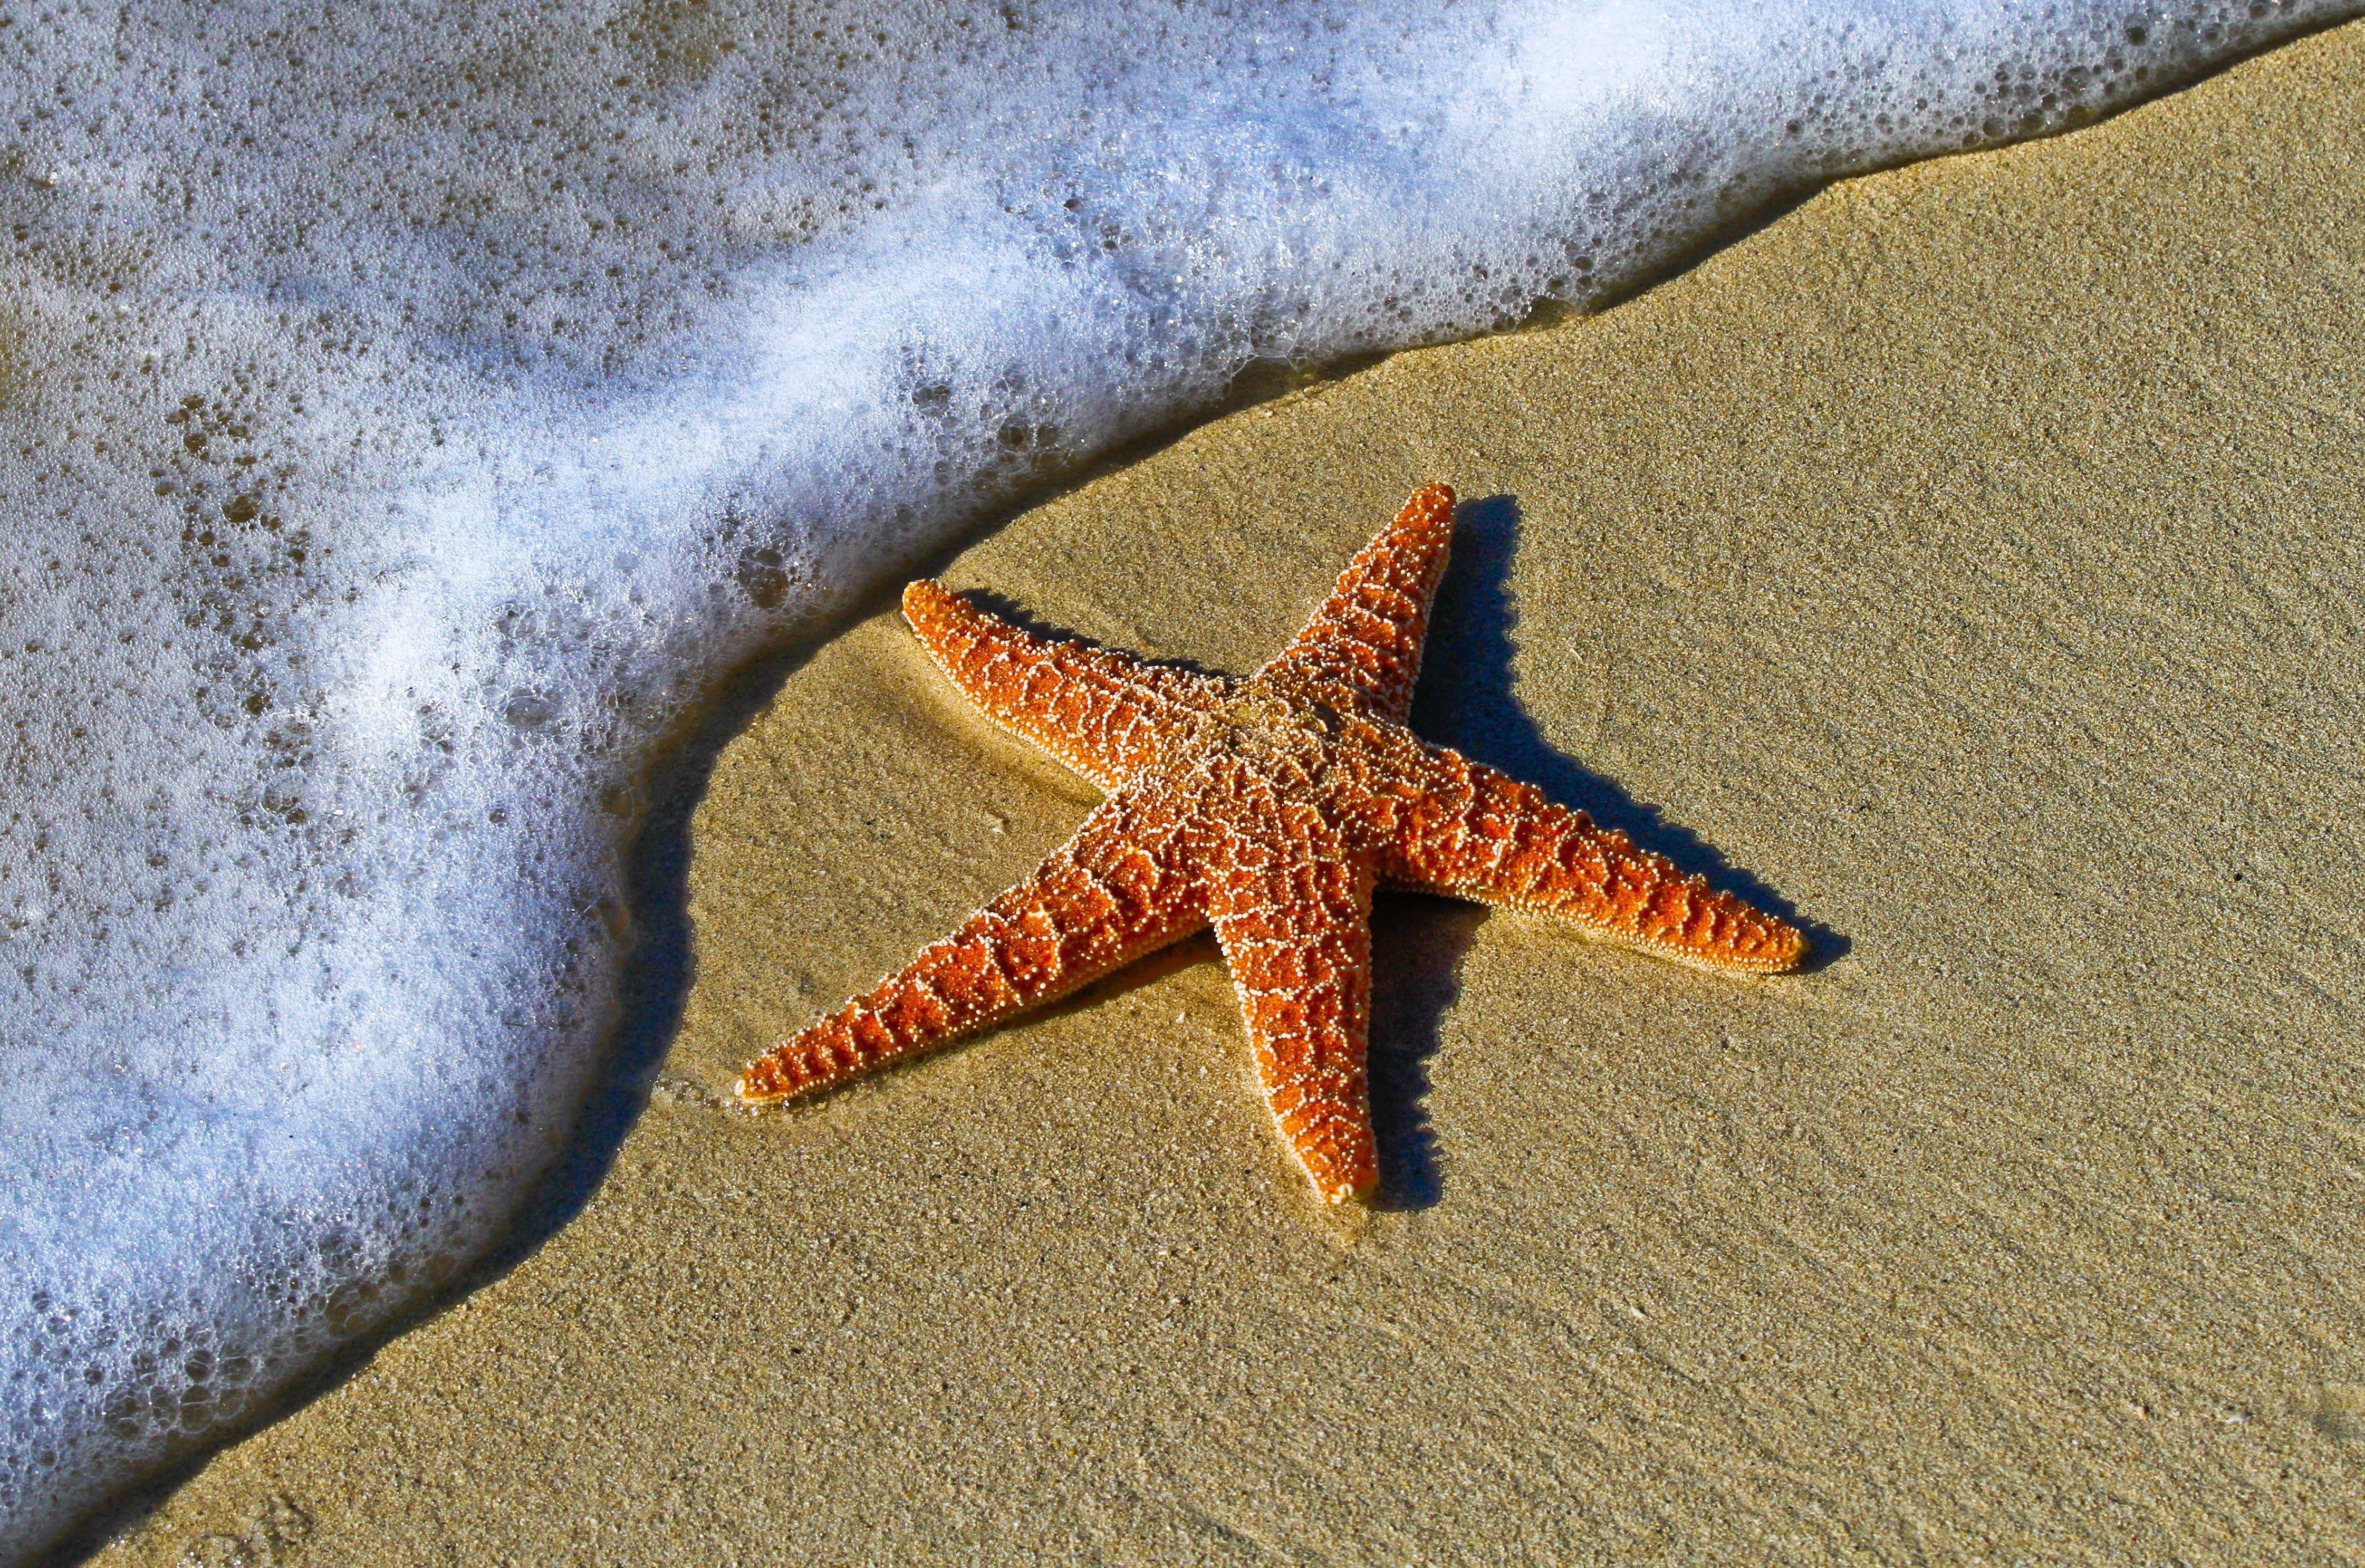 La estrella de mar puede ver en el océano?